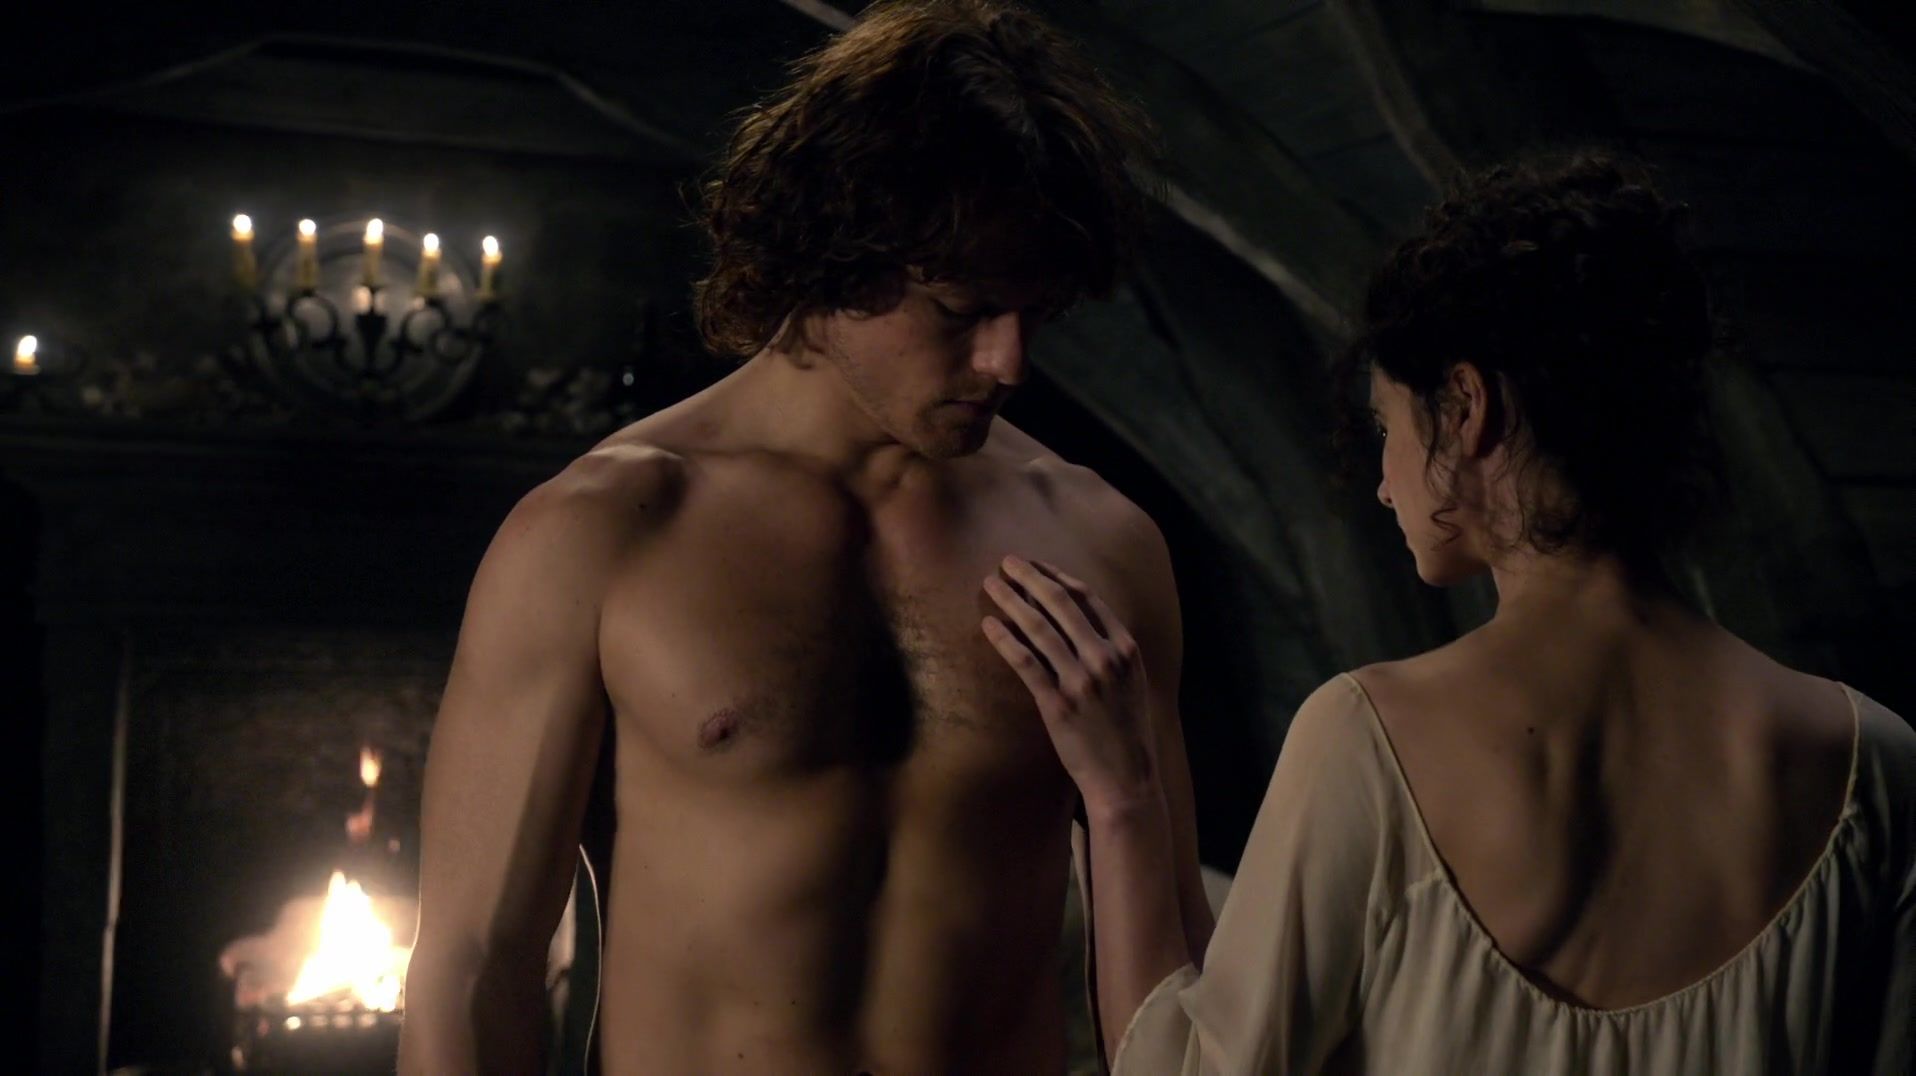 18yearsold Sex scene of naked Caitriona Balfe | TV show "Outlander" Best Blowjob Ever - 2